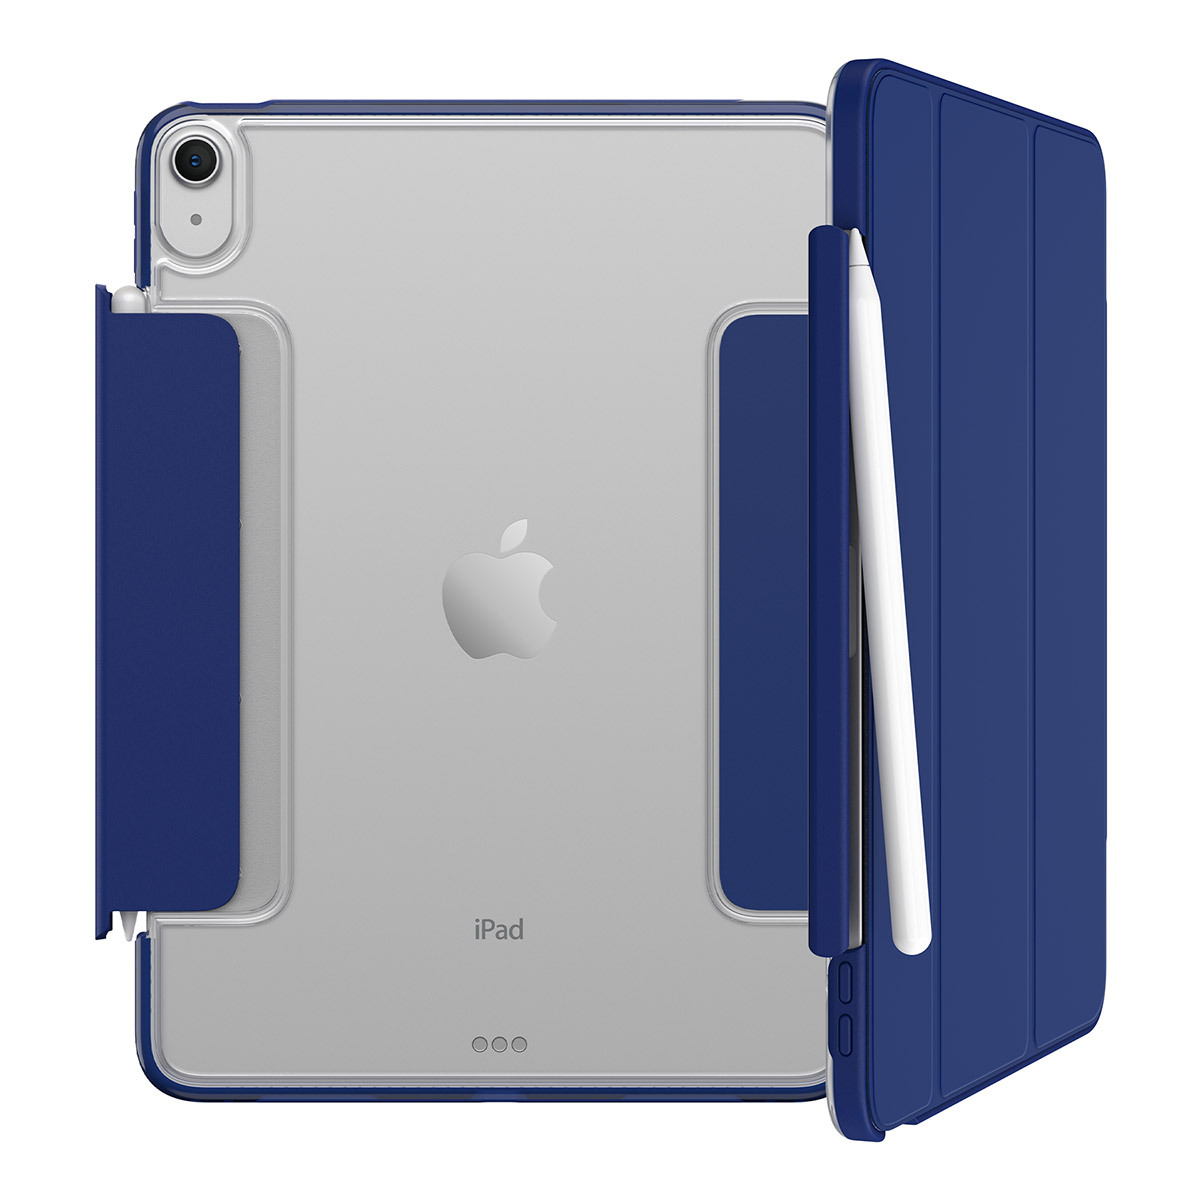 오터박스 시메트리 360 엘리트 아이패드 케이스 - iPad Air 5세대용